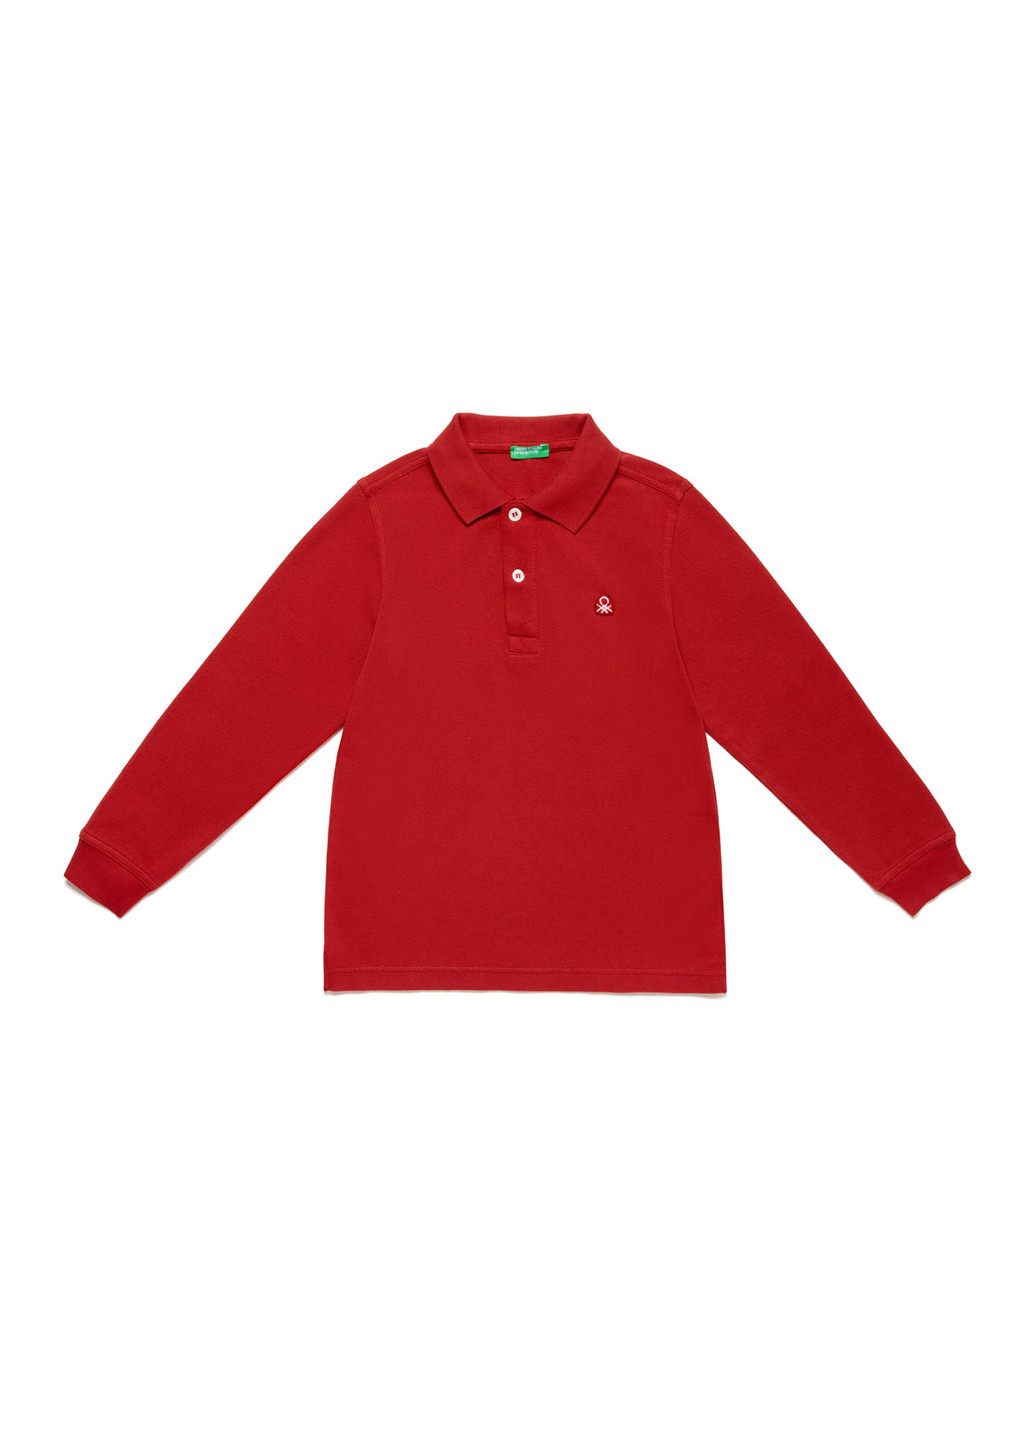 Красная детская футболка-поло для мальчика United Colors of Benetton с логотипом